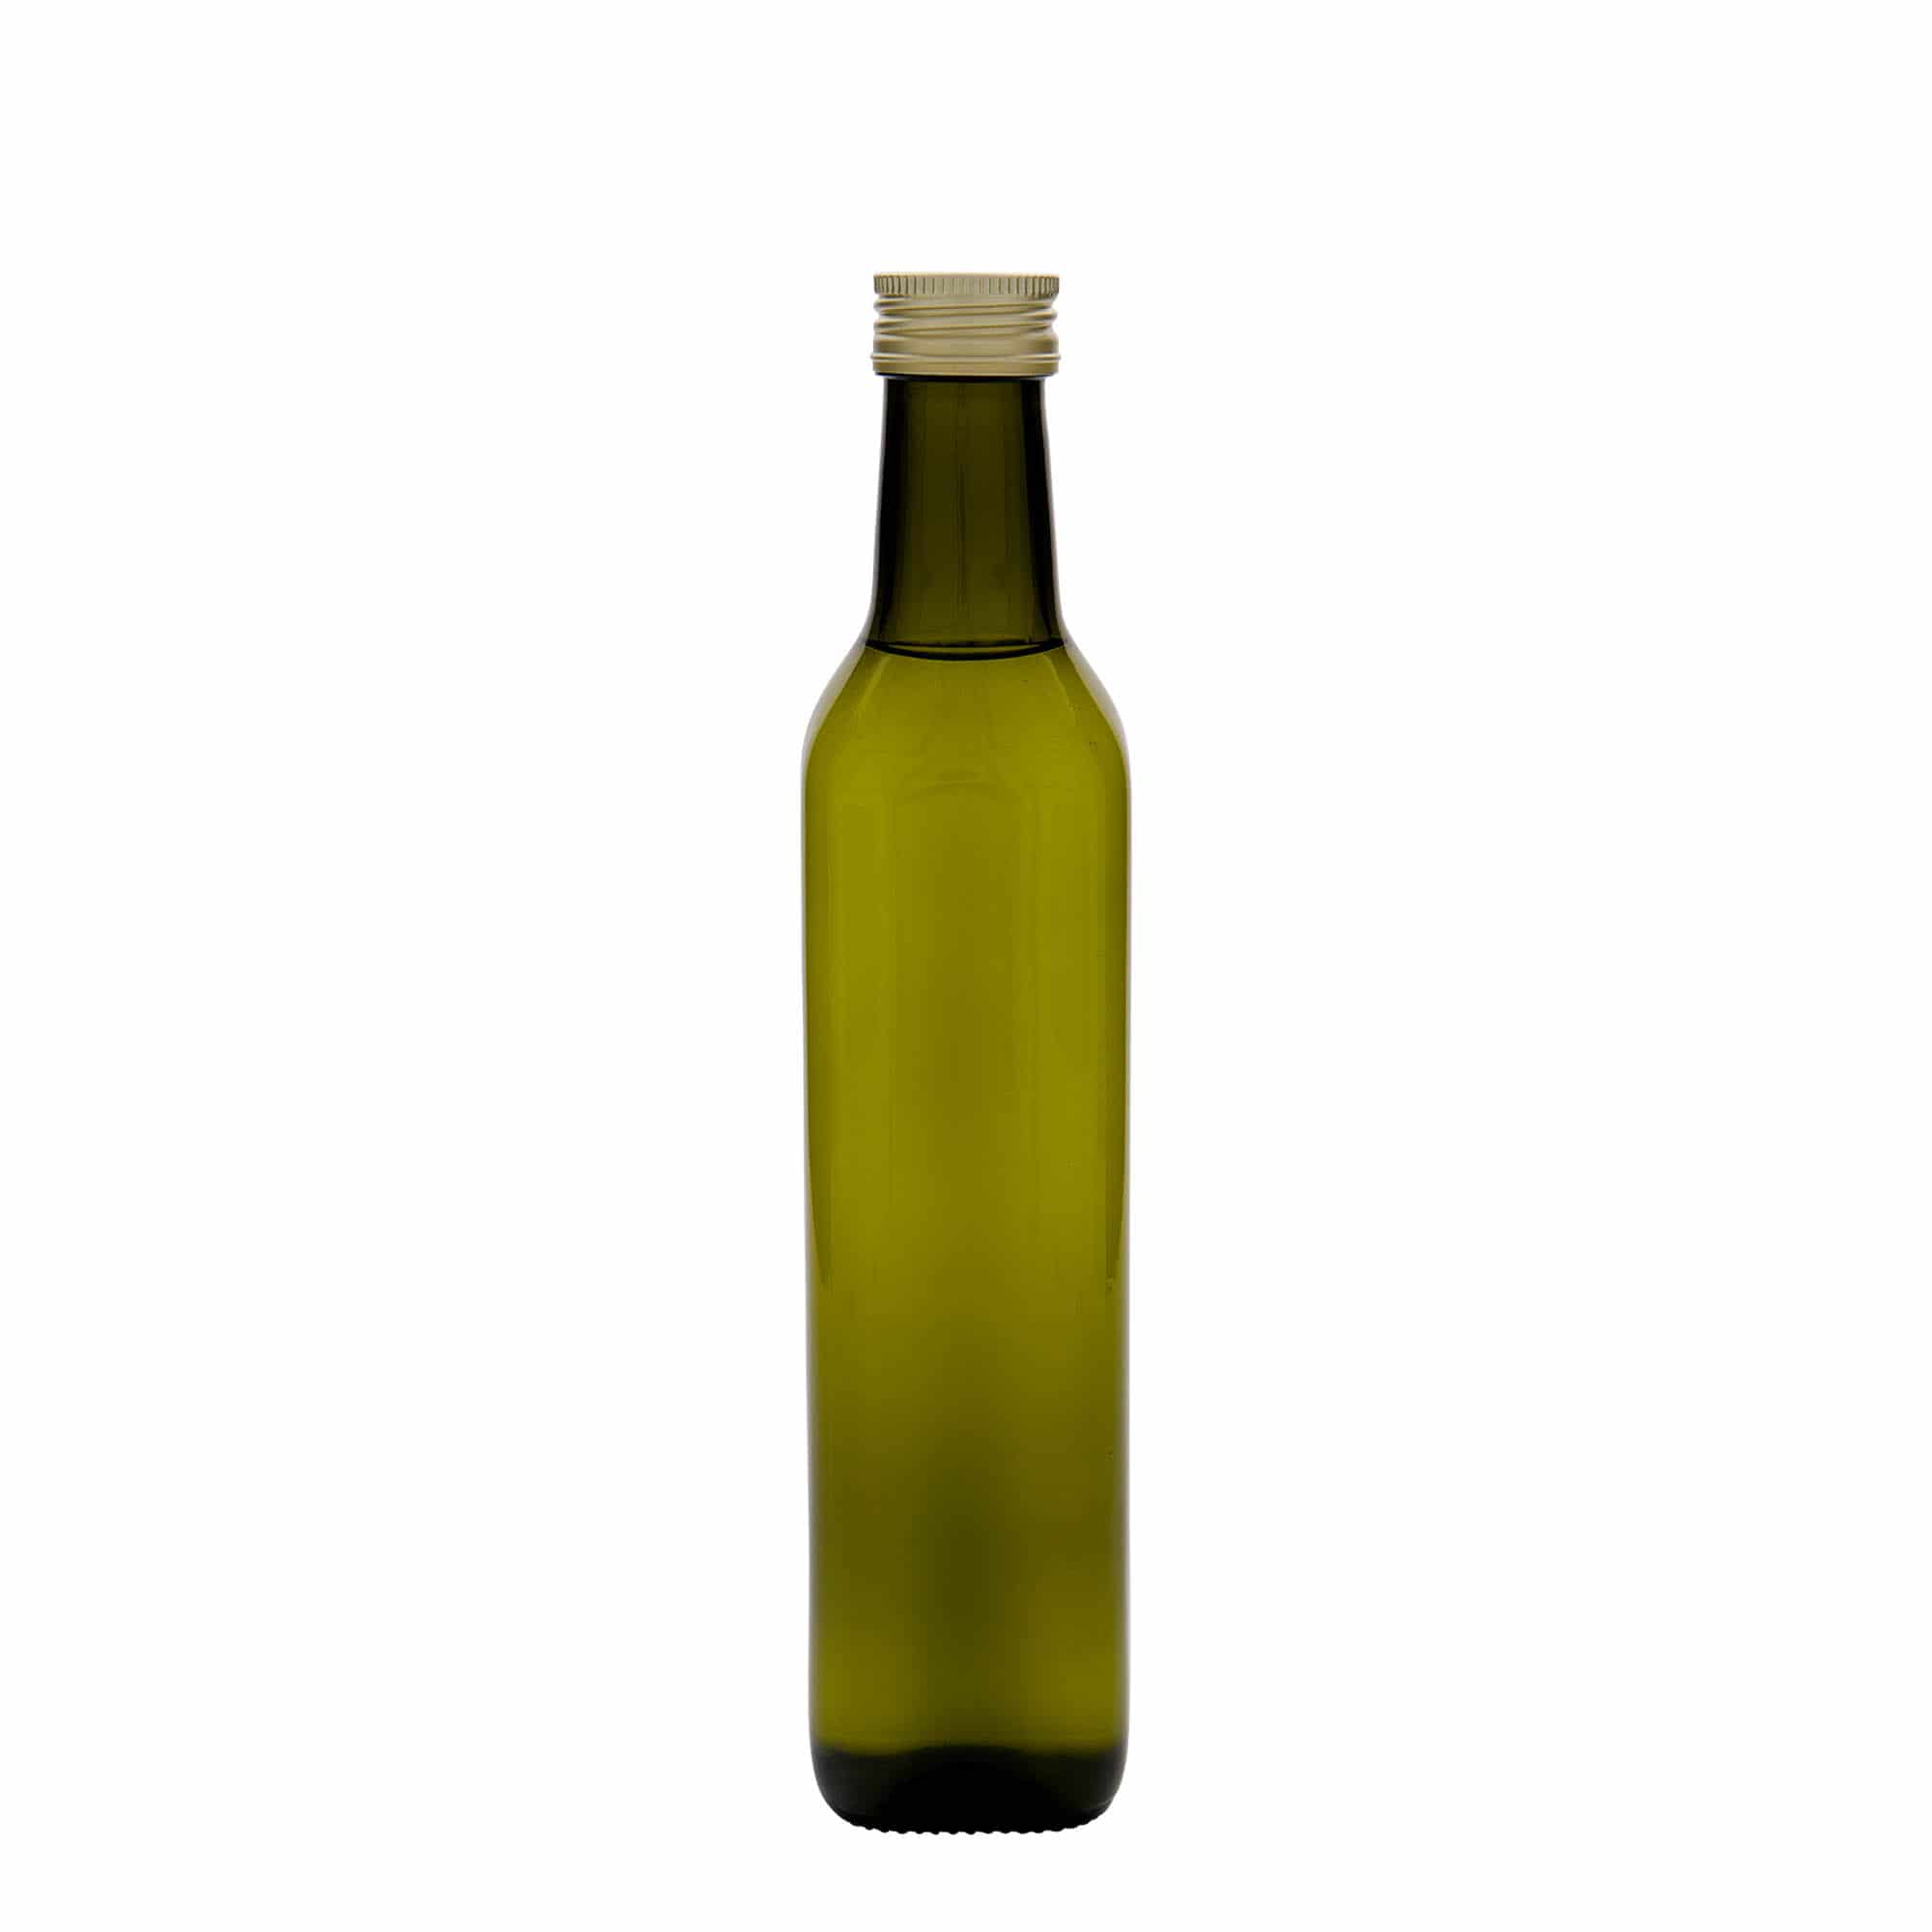 500 ml glasflaske 'Marasca', kvadratisk, antikgrøn, åbning: PP 31,5